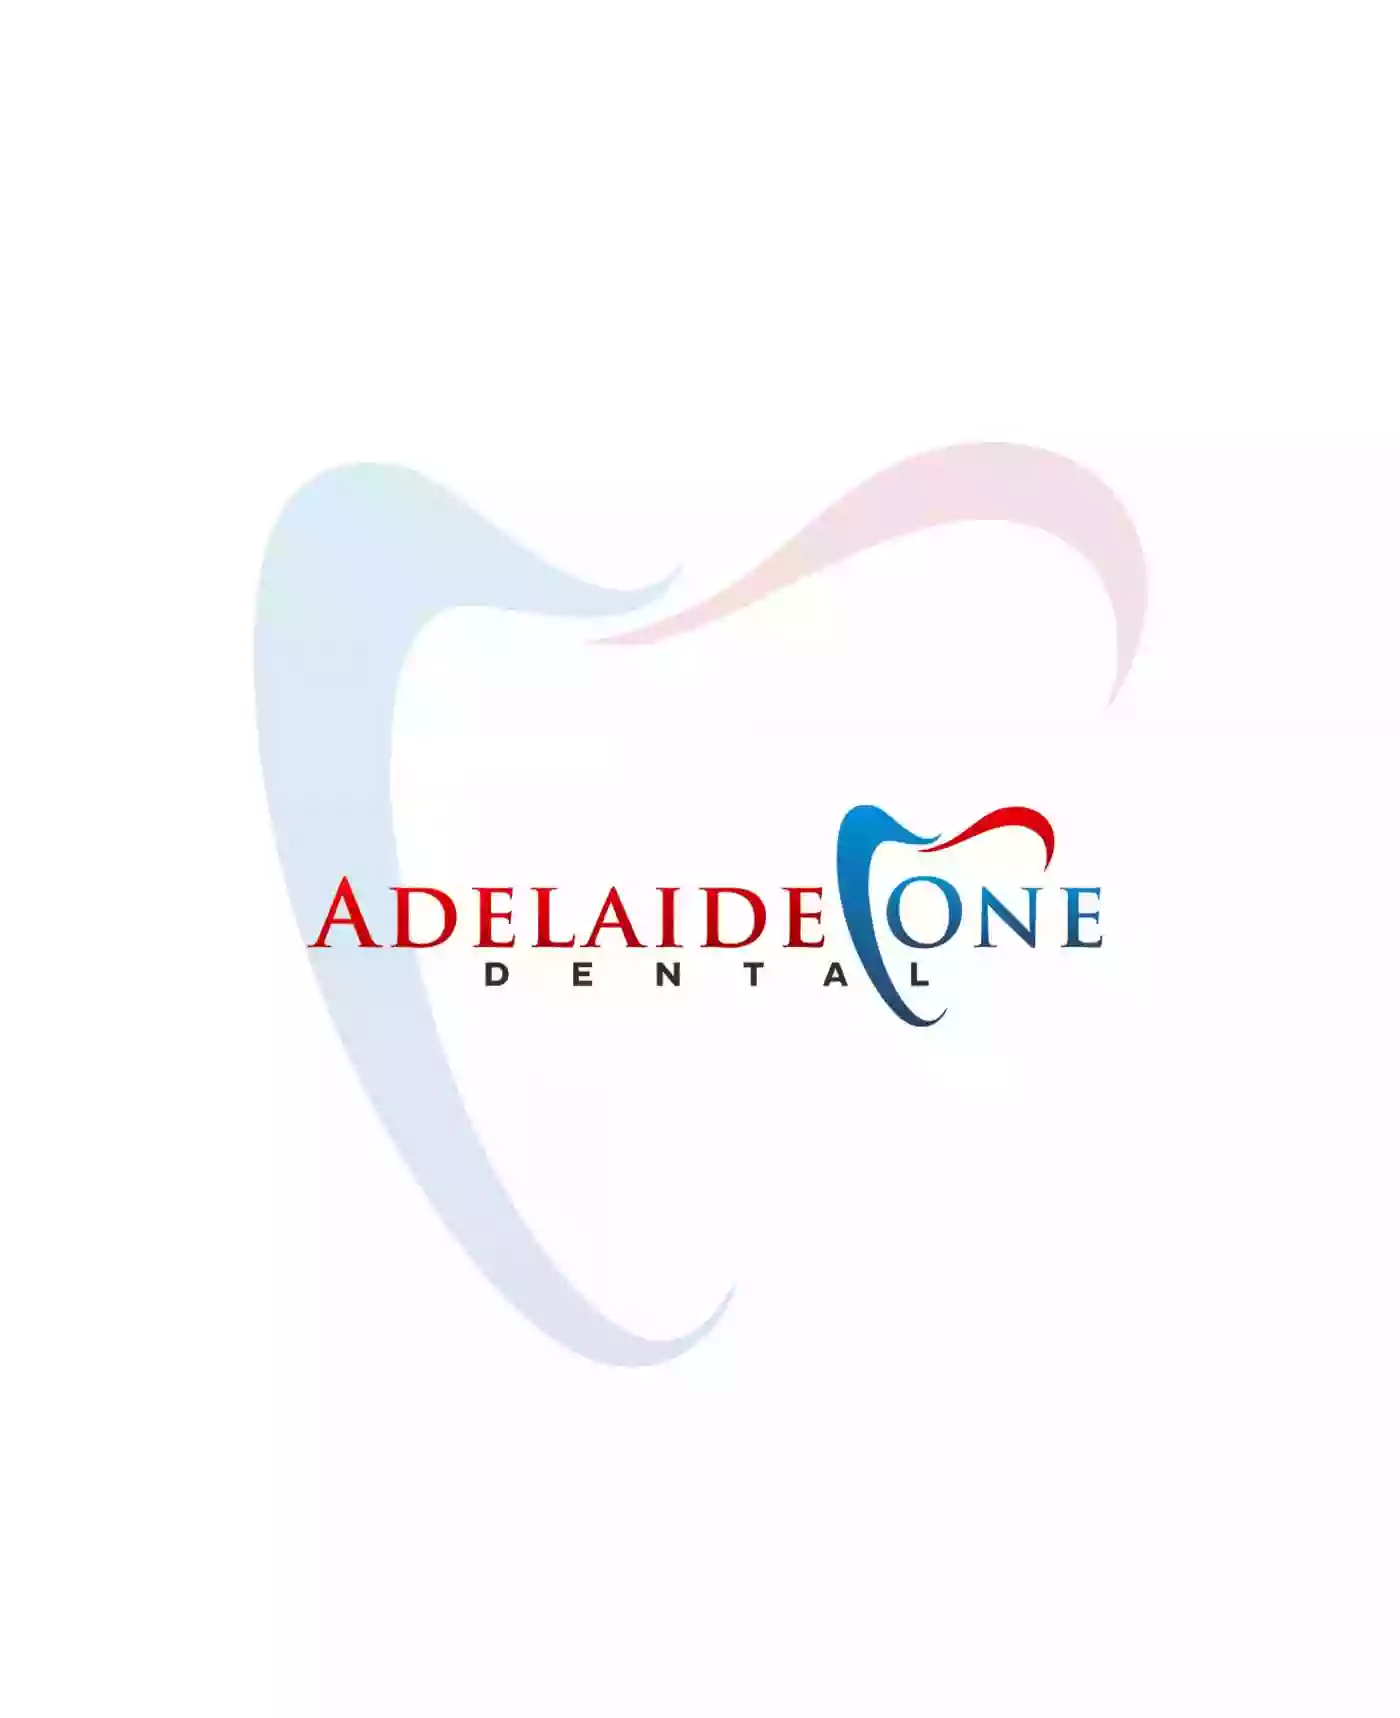 Adelaide One Dental